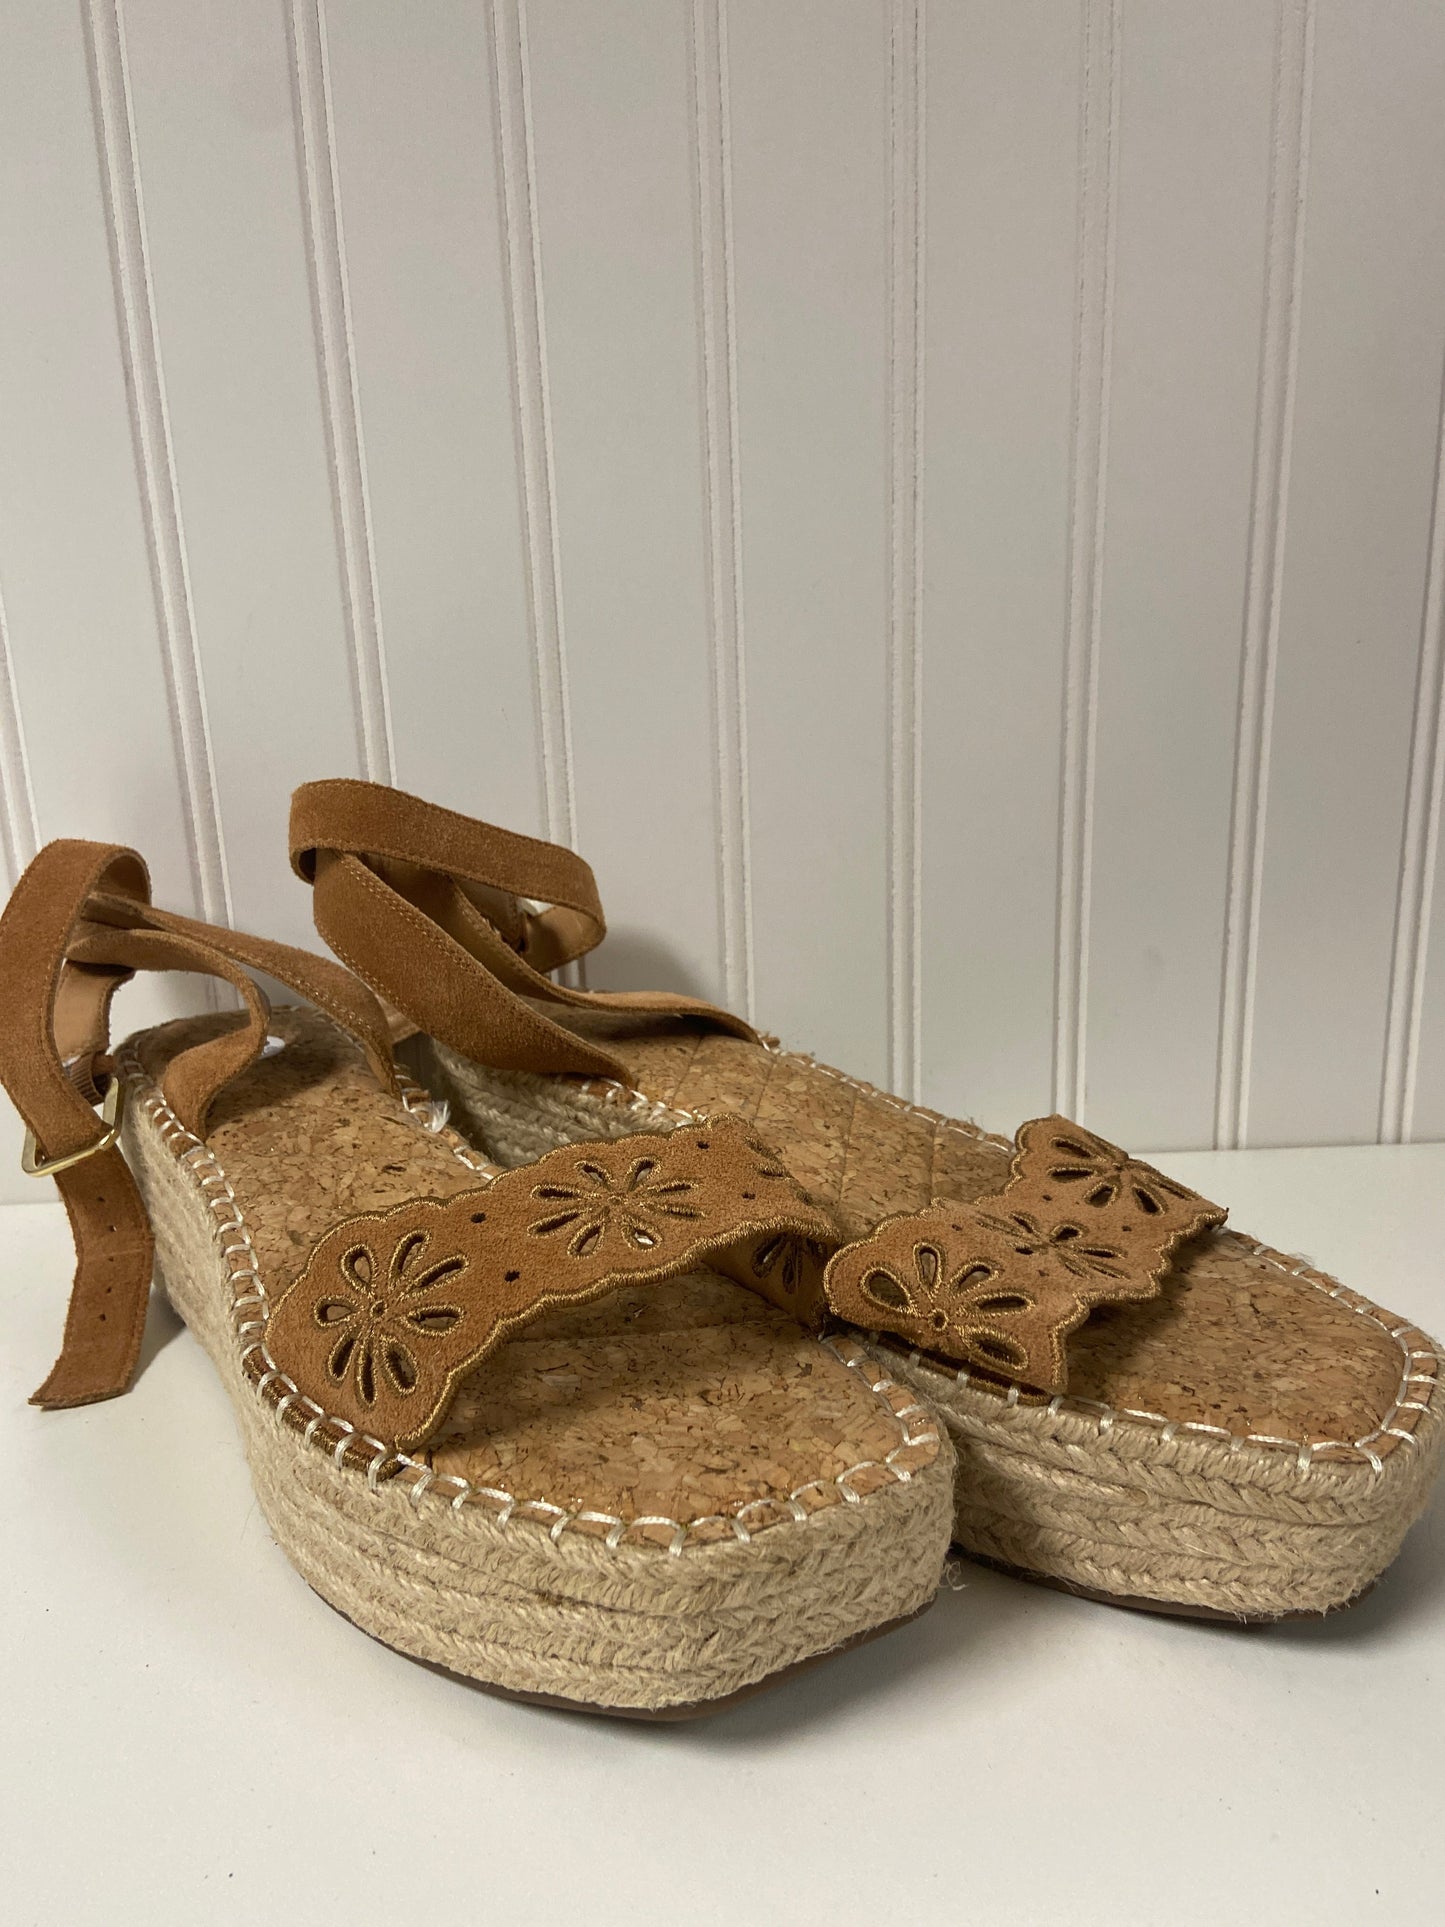 Tan Sandals Heels Wedge Crown Vintage, Size 9.5